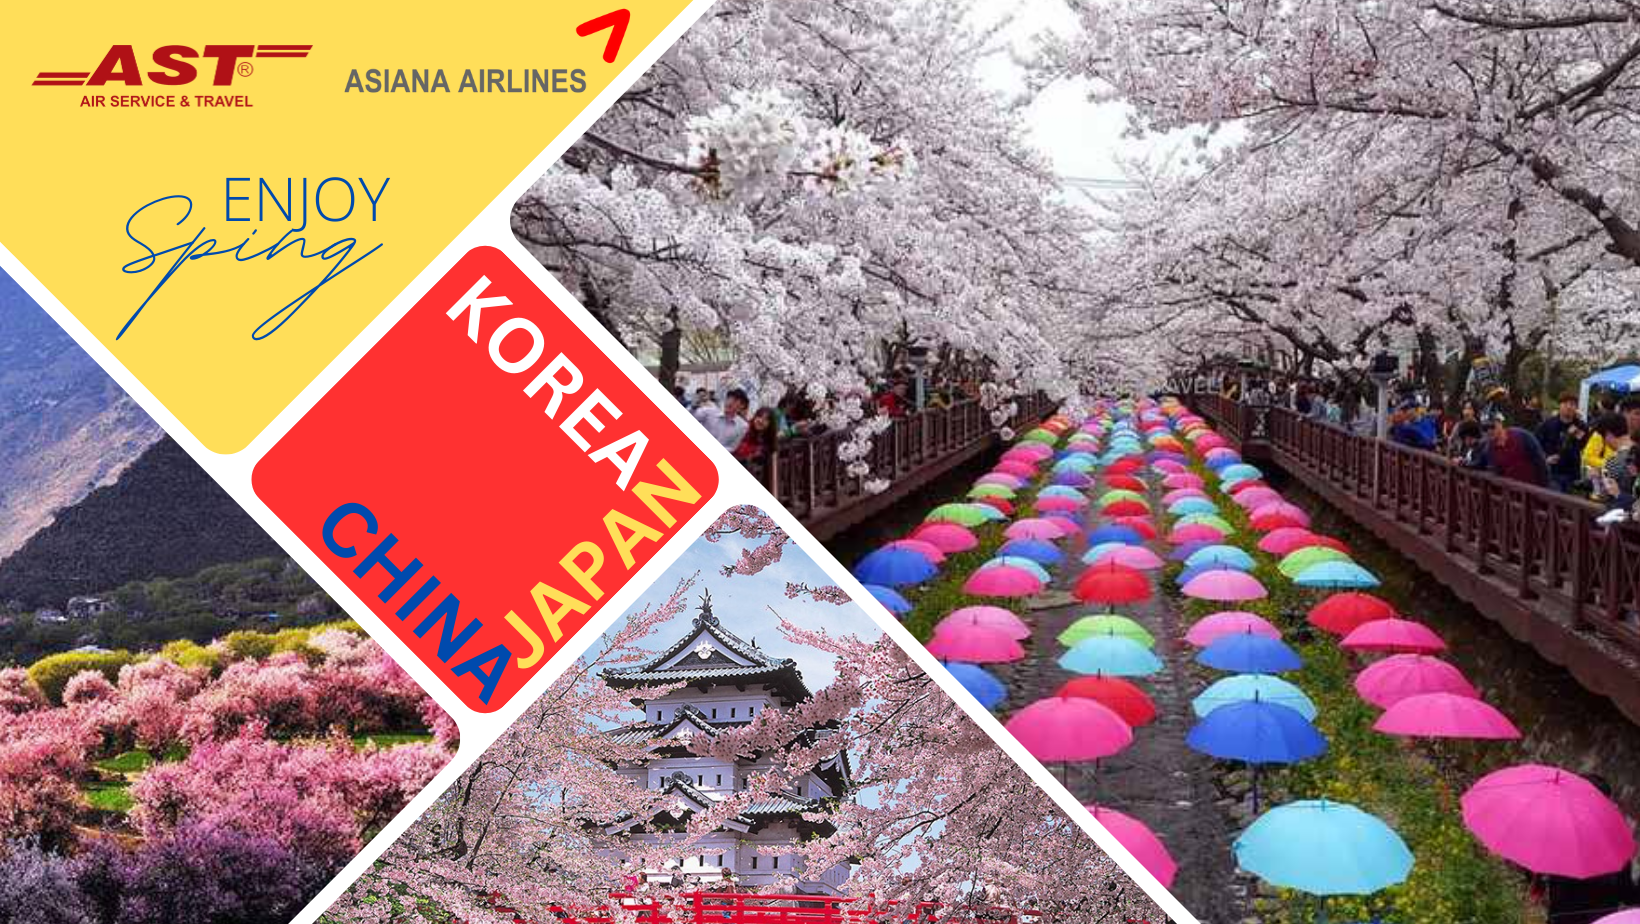 Khuyến mãi đặc biệt từ Asiana Airlines cho các chuyến bay đến Hàn, Nhật, Trung Quốc